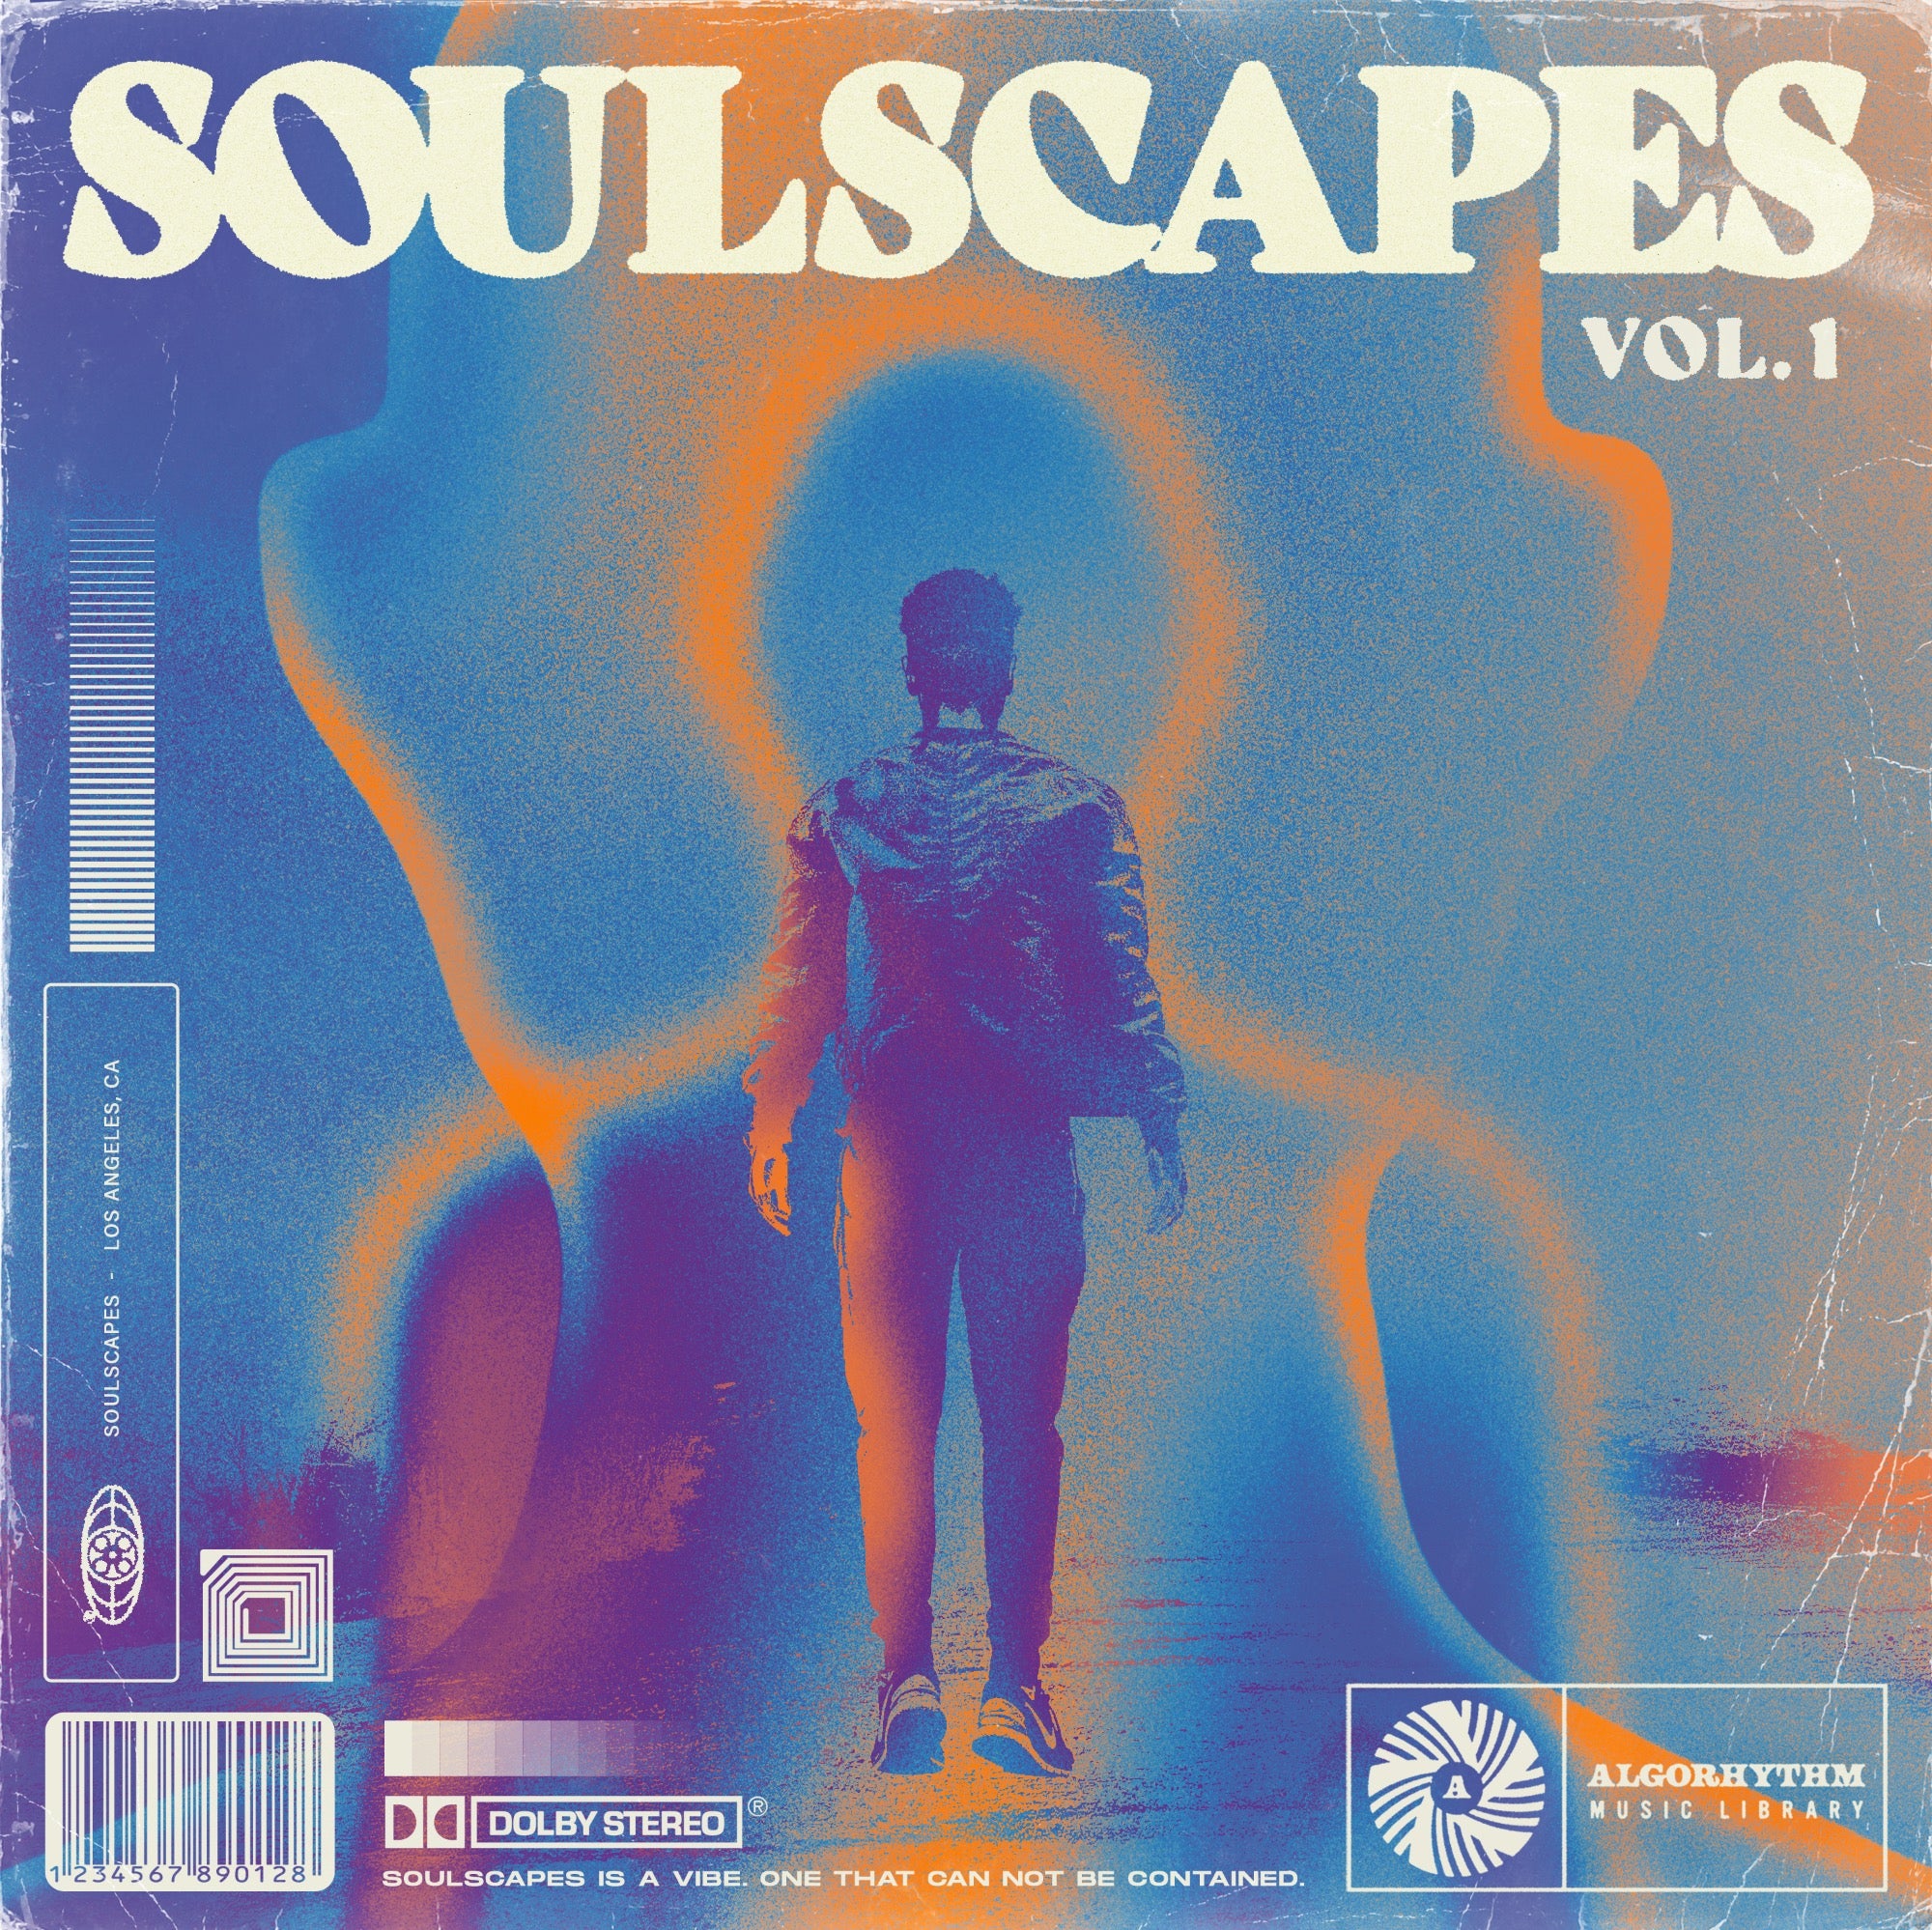 Soulscapes Vol. 1